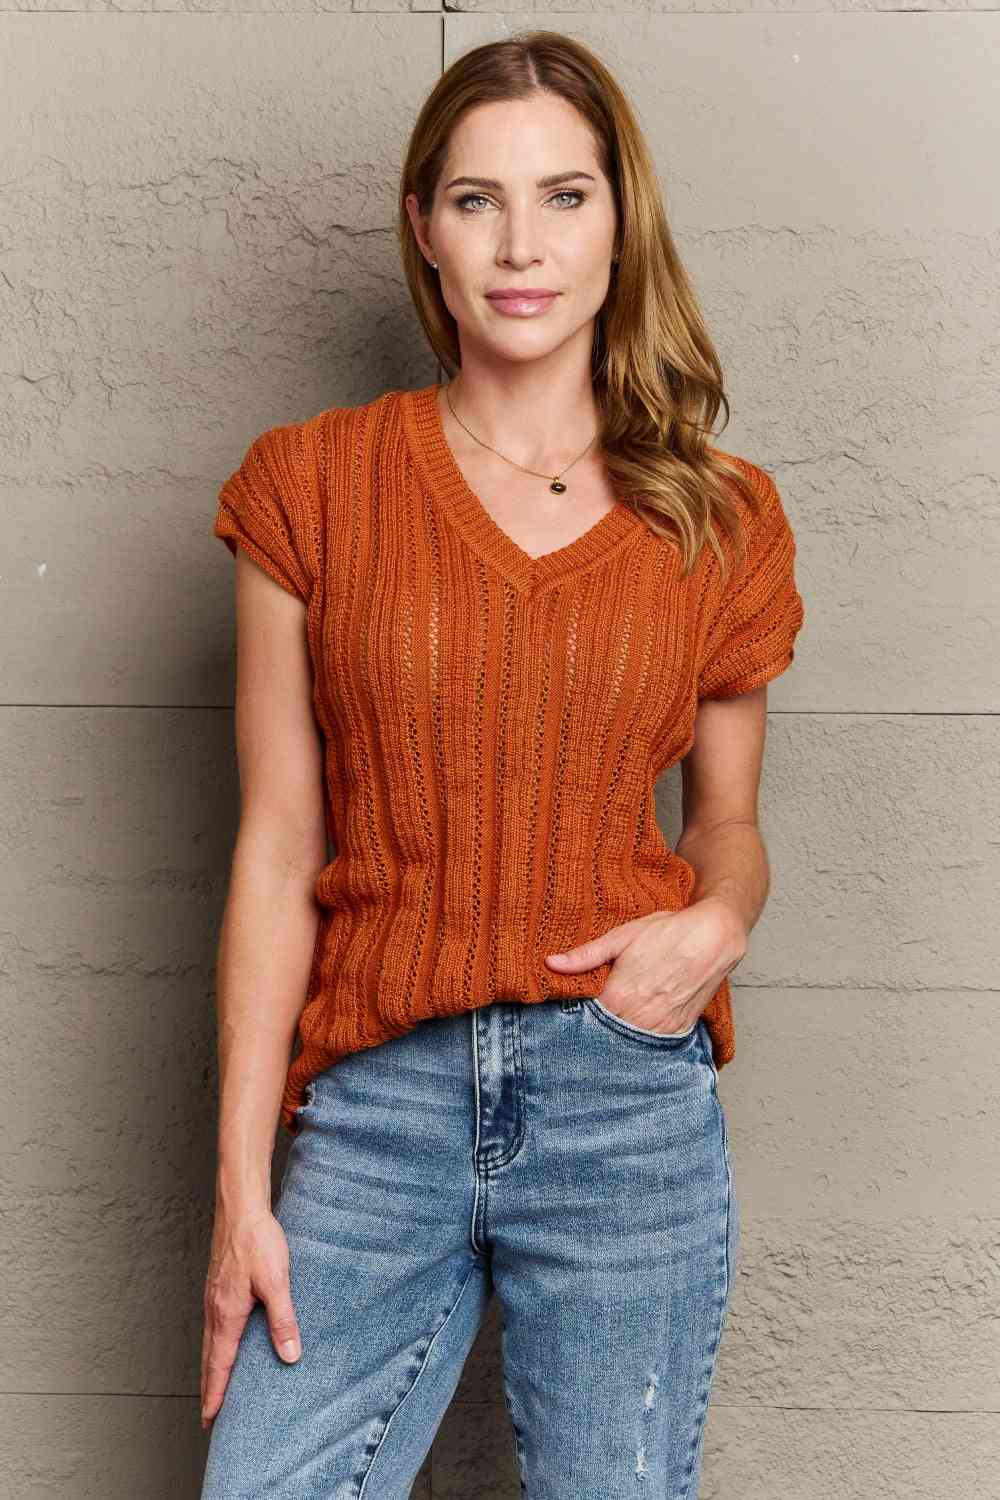 Women's Sew In Love Full Size Preppy Casual Knit Sweater Vest